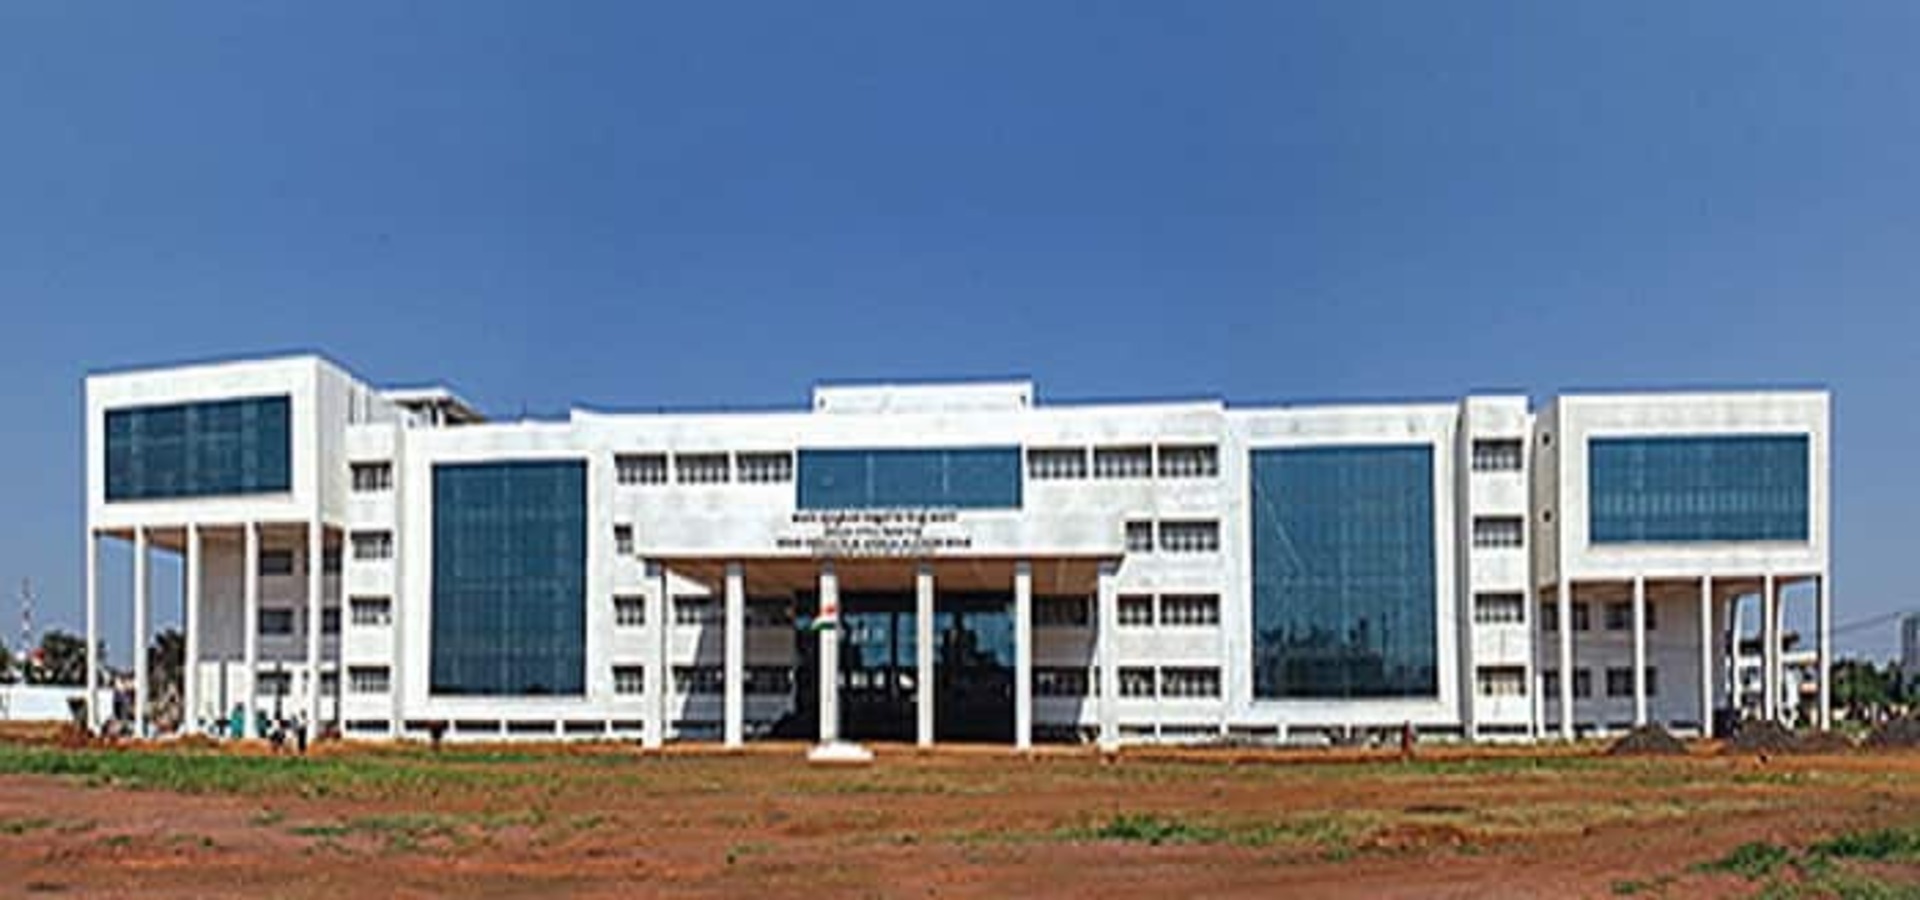 Bidar Institute of Medical Sciences - Bidar